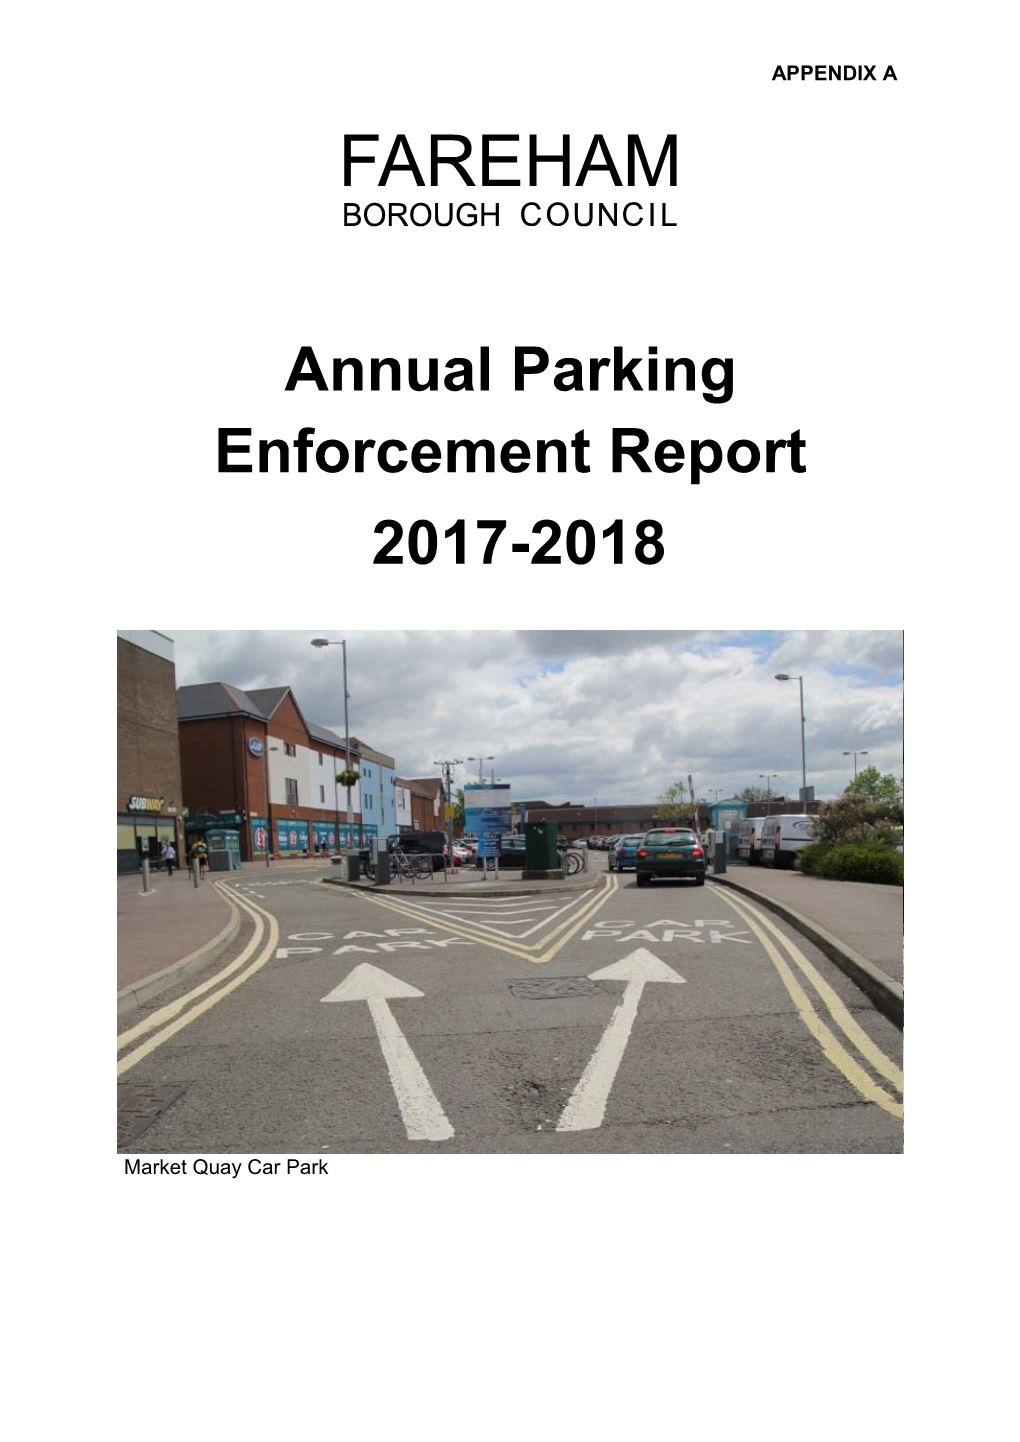 Annual Parking Enforcement Report 2017-2018